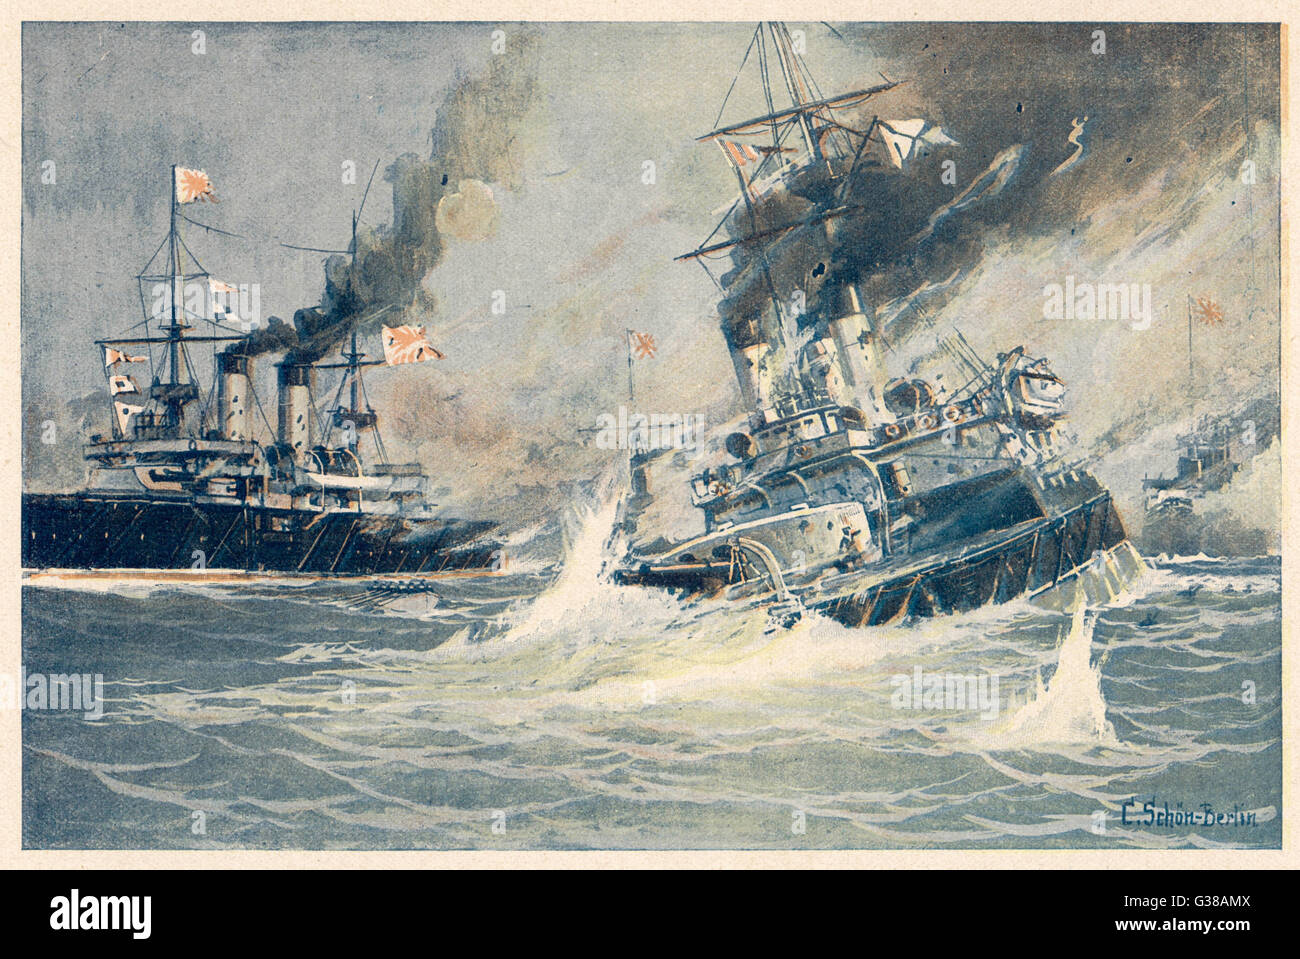 Schlacht von TSUSHIMA Straße den Untergang des russischen Schlachtschiffes "Navarin" - fast die gesamte russische Flotte wurde zerstört oder gefangengenommen von den Japanern in der 2-Tage-Schlacht Datum: 27. und 28. Mai 1905 Stockfoto